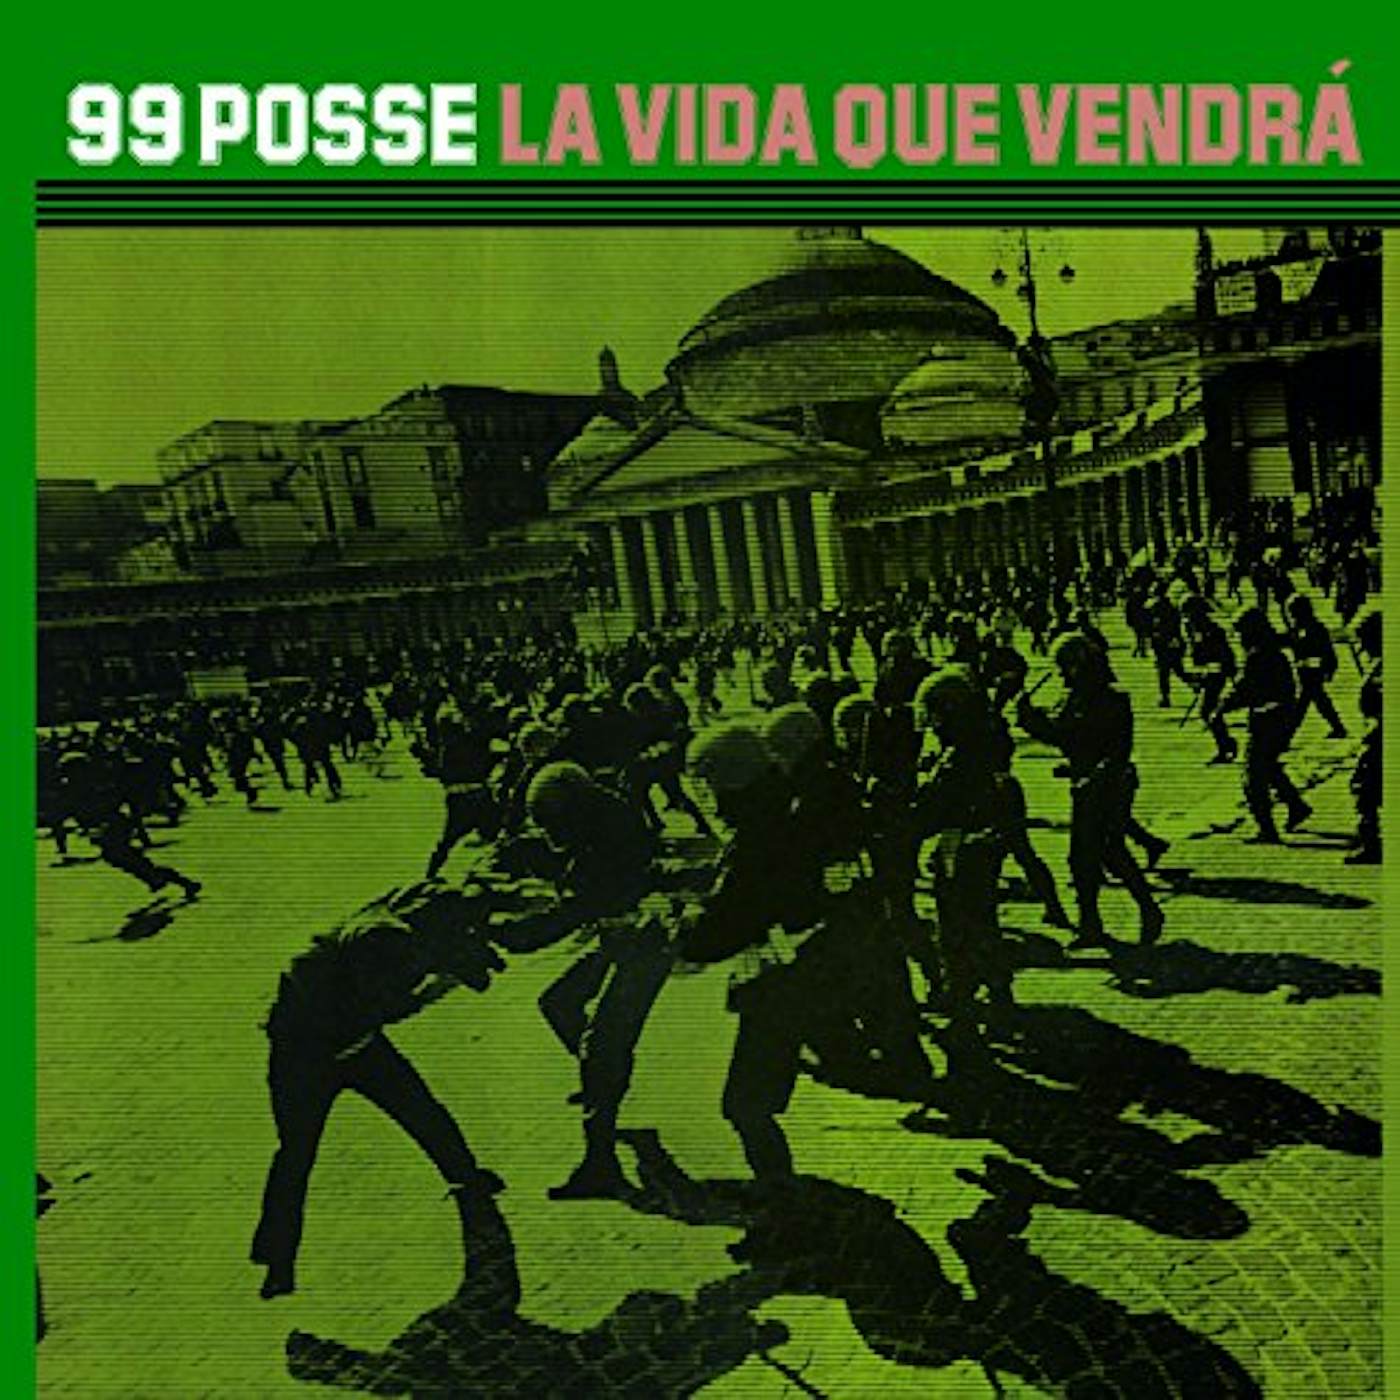 99 Posse LA VIDA QUE VENDRA Vinyl Record